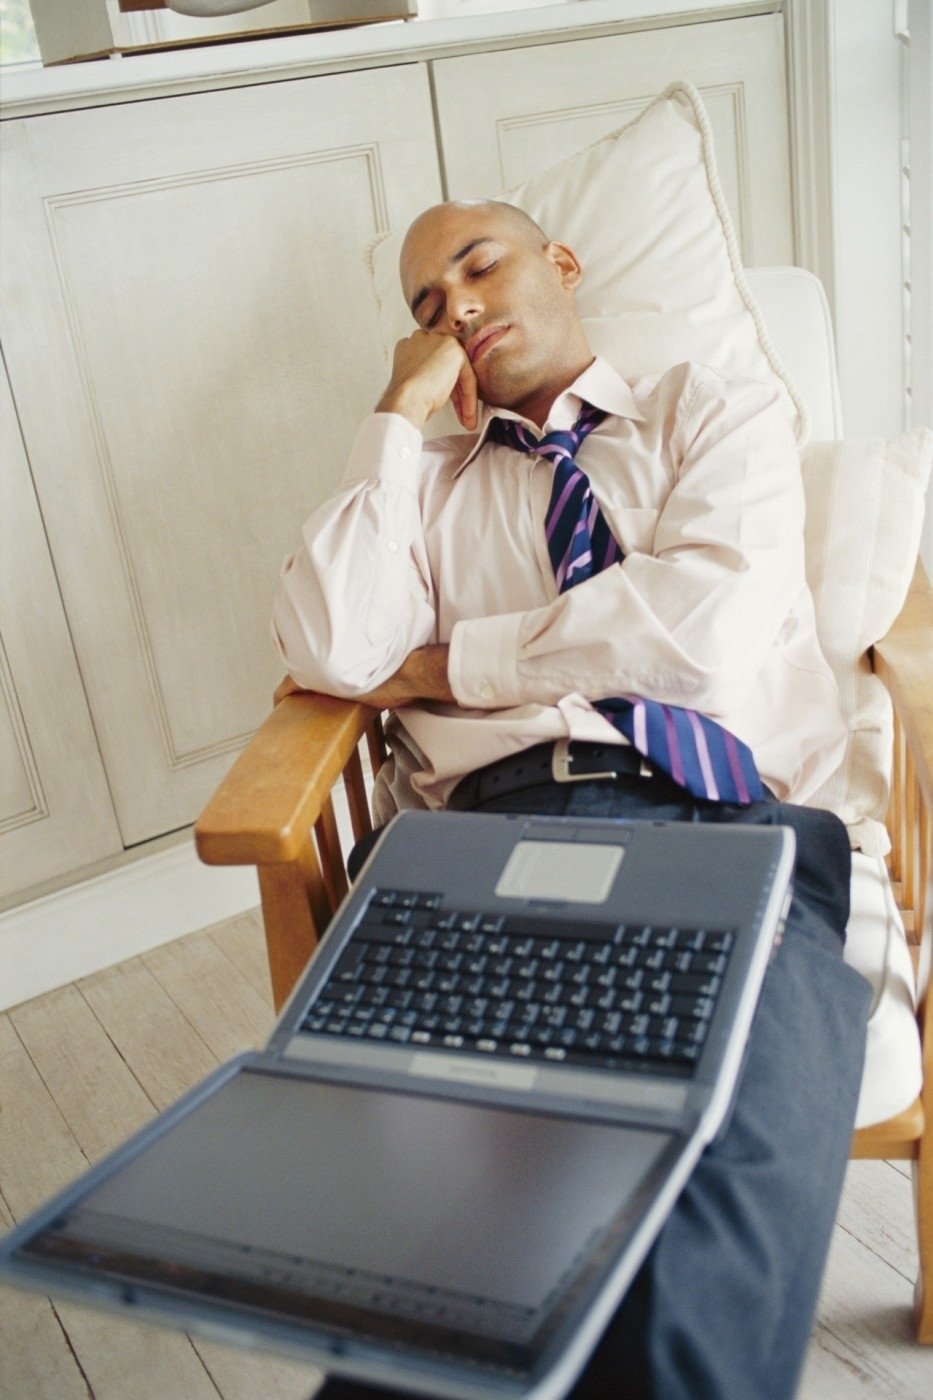 Sladký home office? Vědci tvrdí, že jsou lidé ještě více ve stresu a mají problém se spaním.